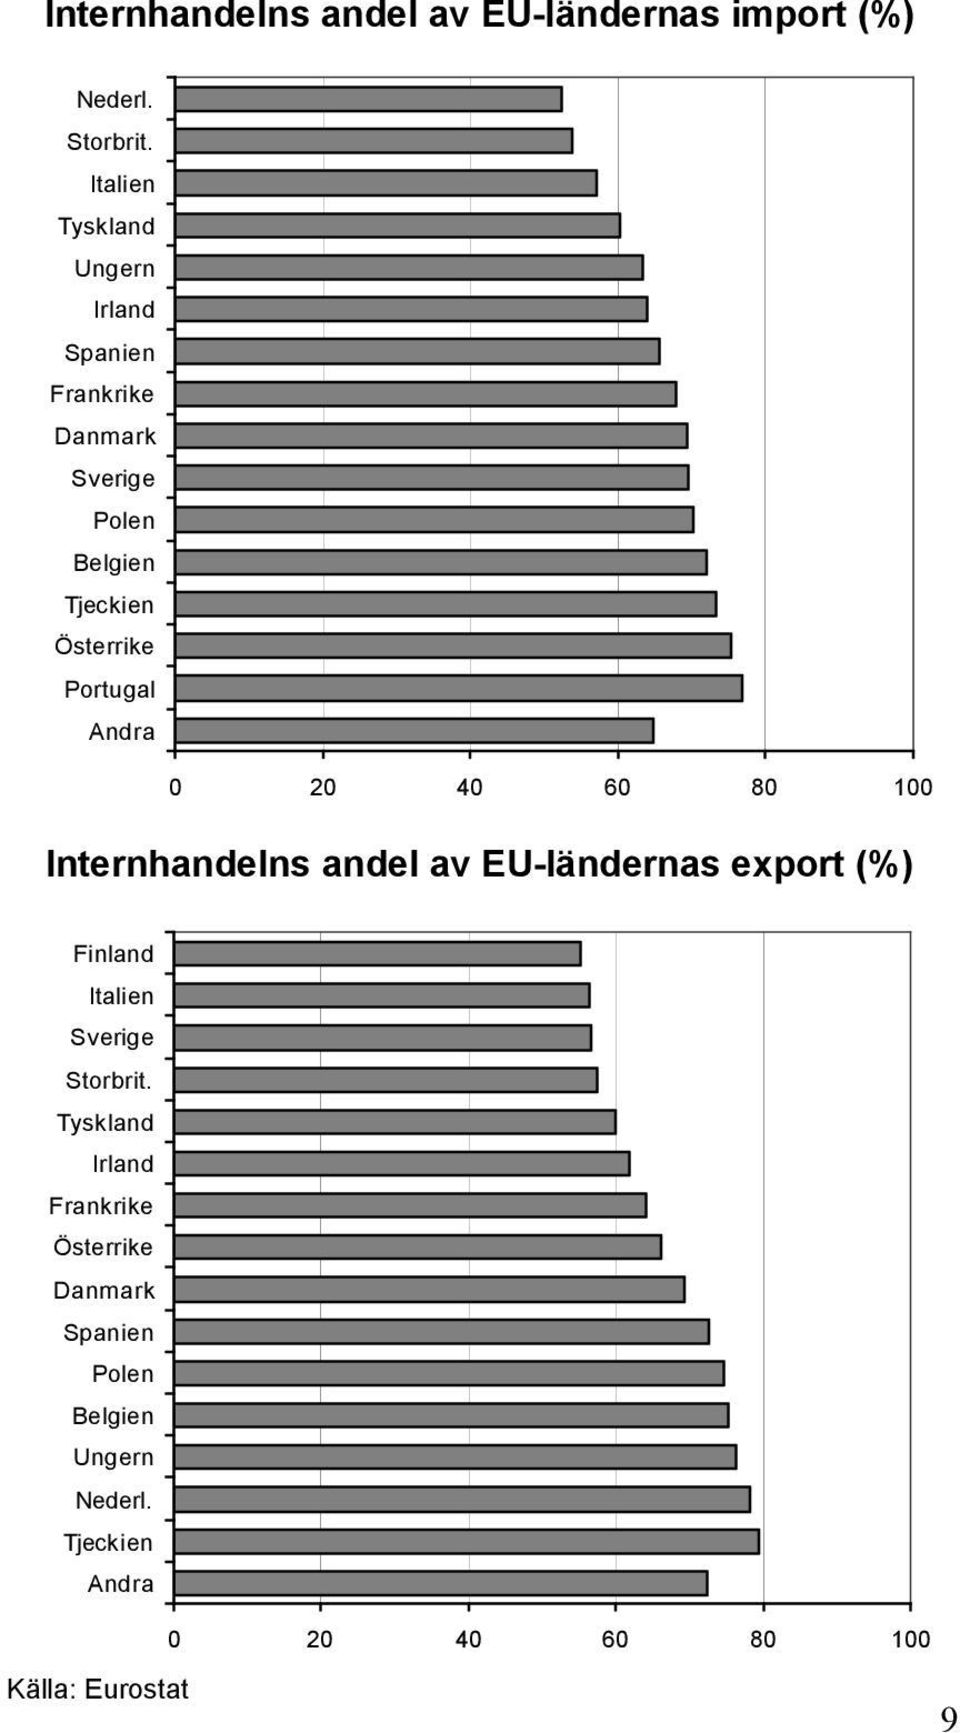 Portugal Andra 0 20 40 60 80 100 Internhandelns andel av EU-ländernas export (%) Finland Italien